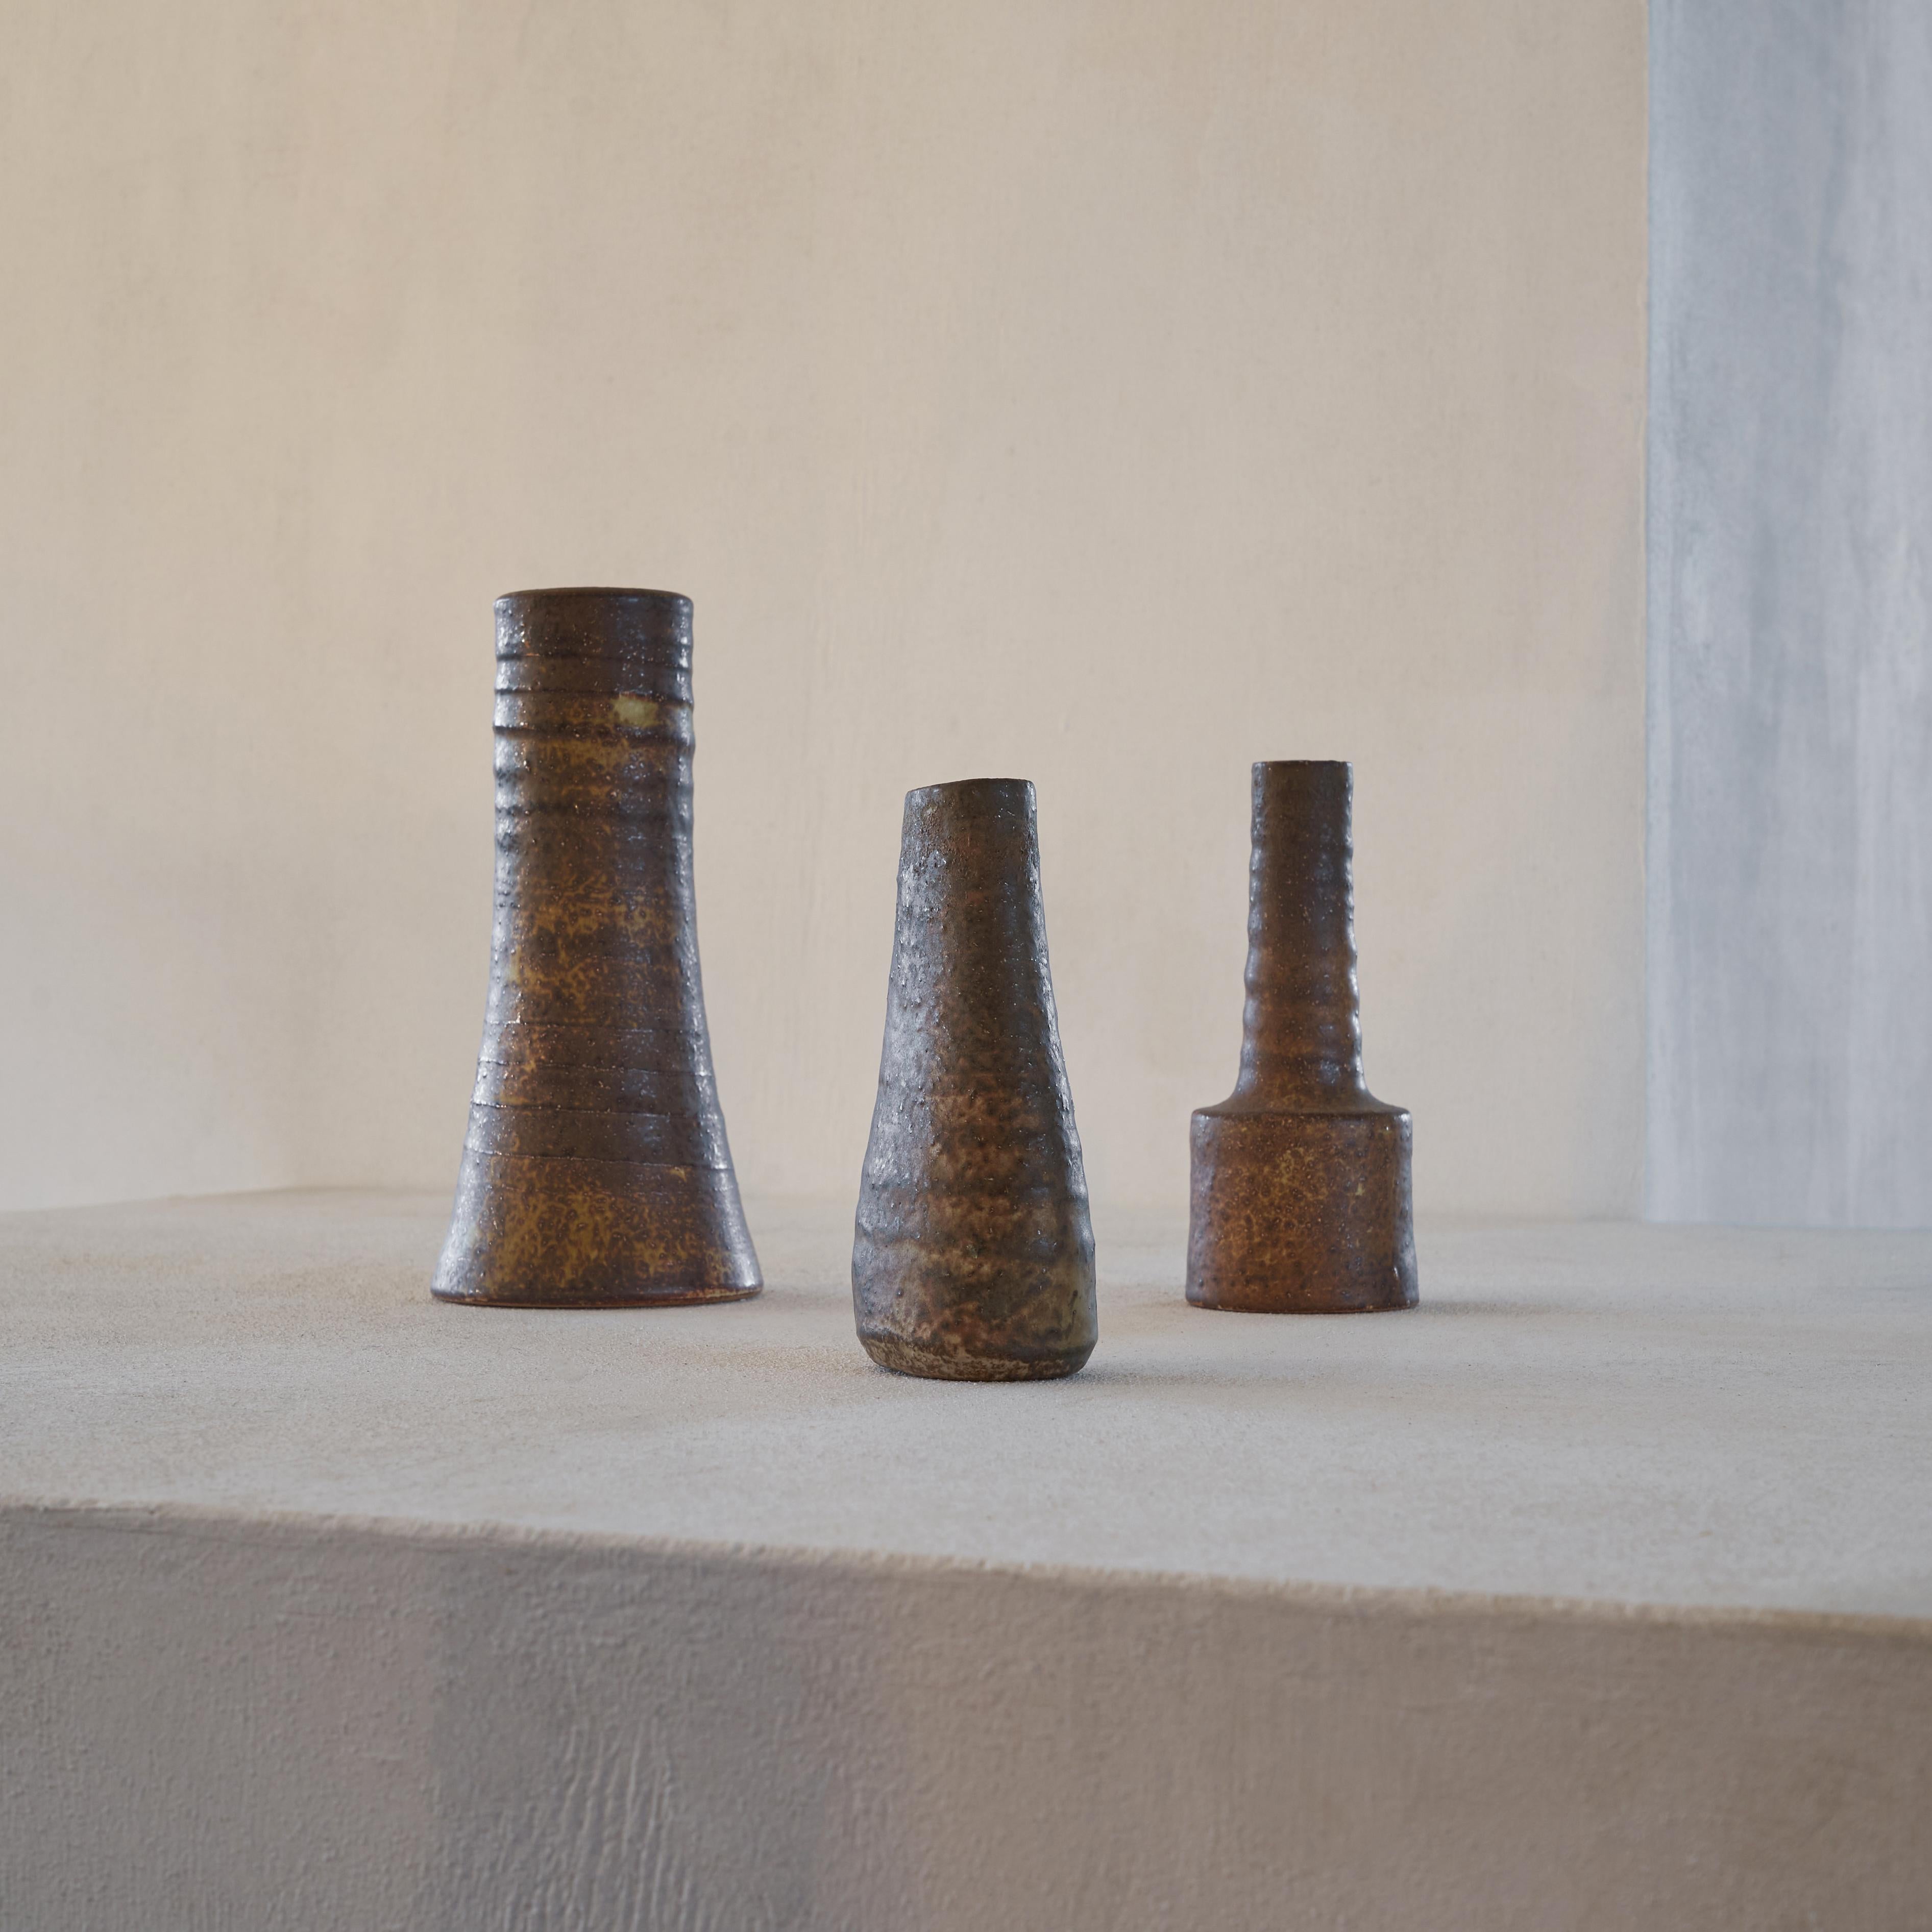 Magnifique ensemble de 3 vases en poterie hollandaise de style moderne du milieu du siècle par la célèbre famille Mobach. 

Ensemble de vases très décoratifs. Ensemble, ils forment un trio magnifique et atmosphérique, comme une scène d'un tableau